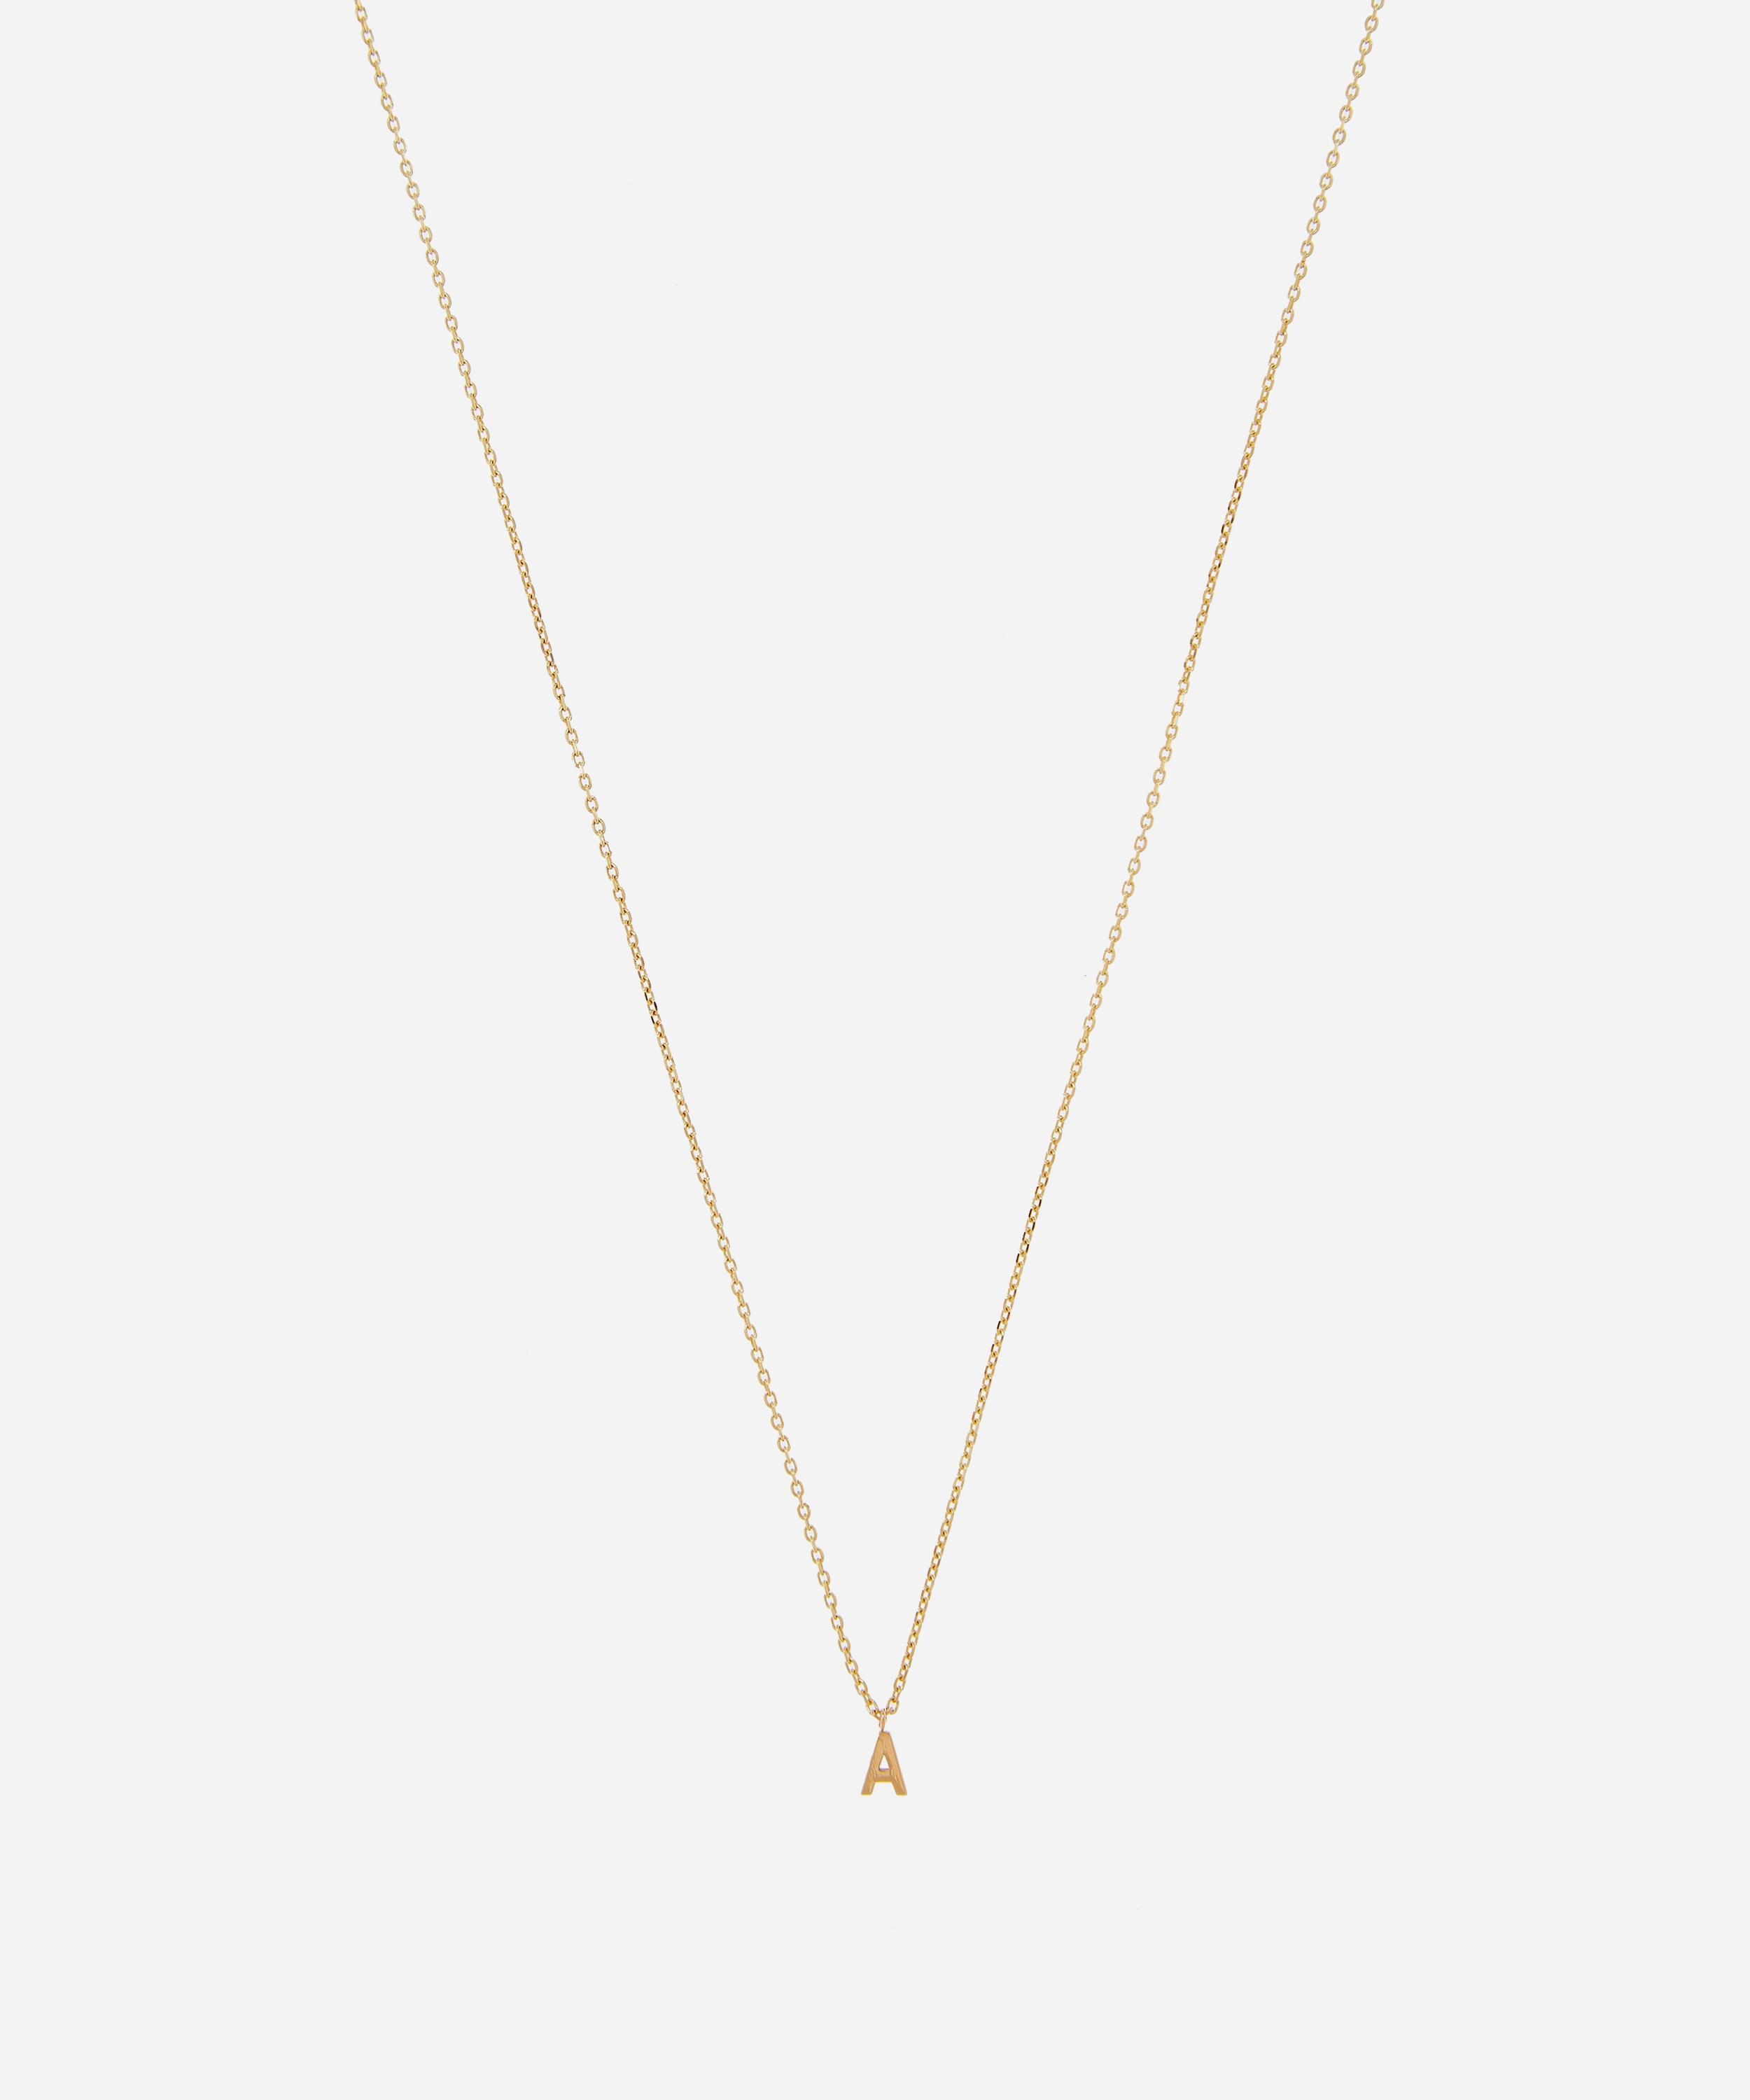 AURUM + GREY 9ct Gold M Initial Pendant Necklace